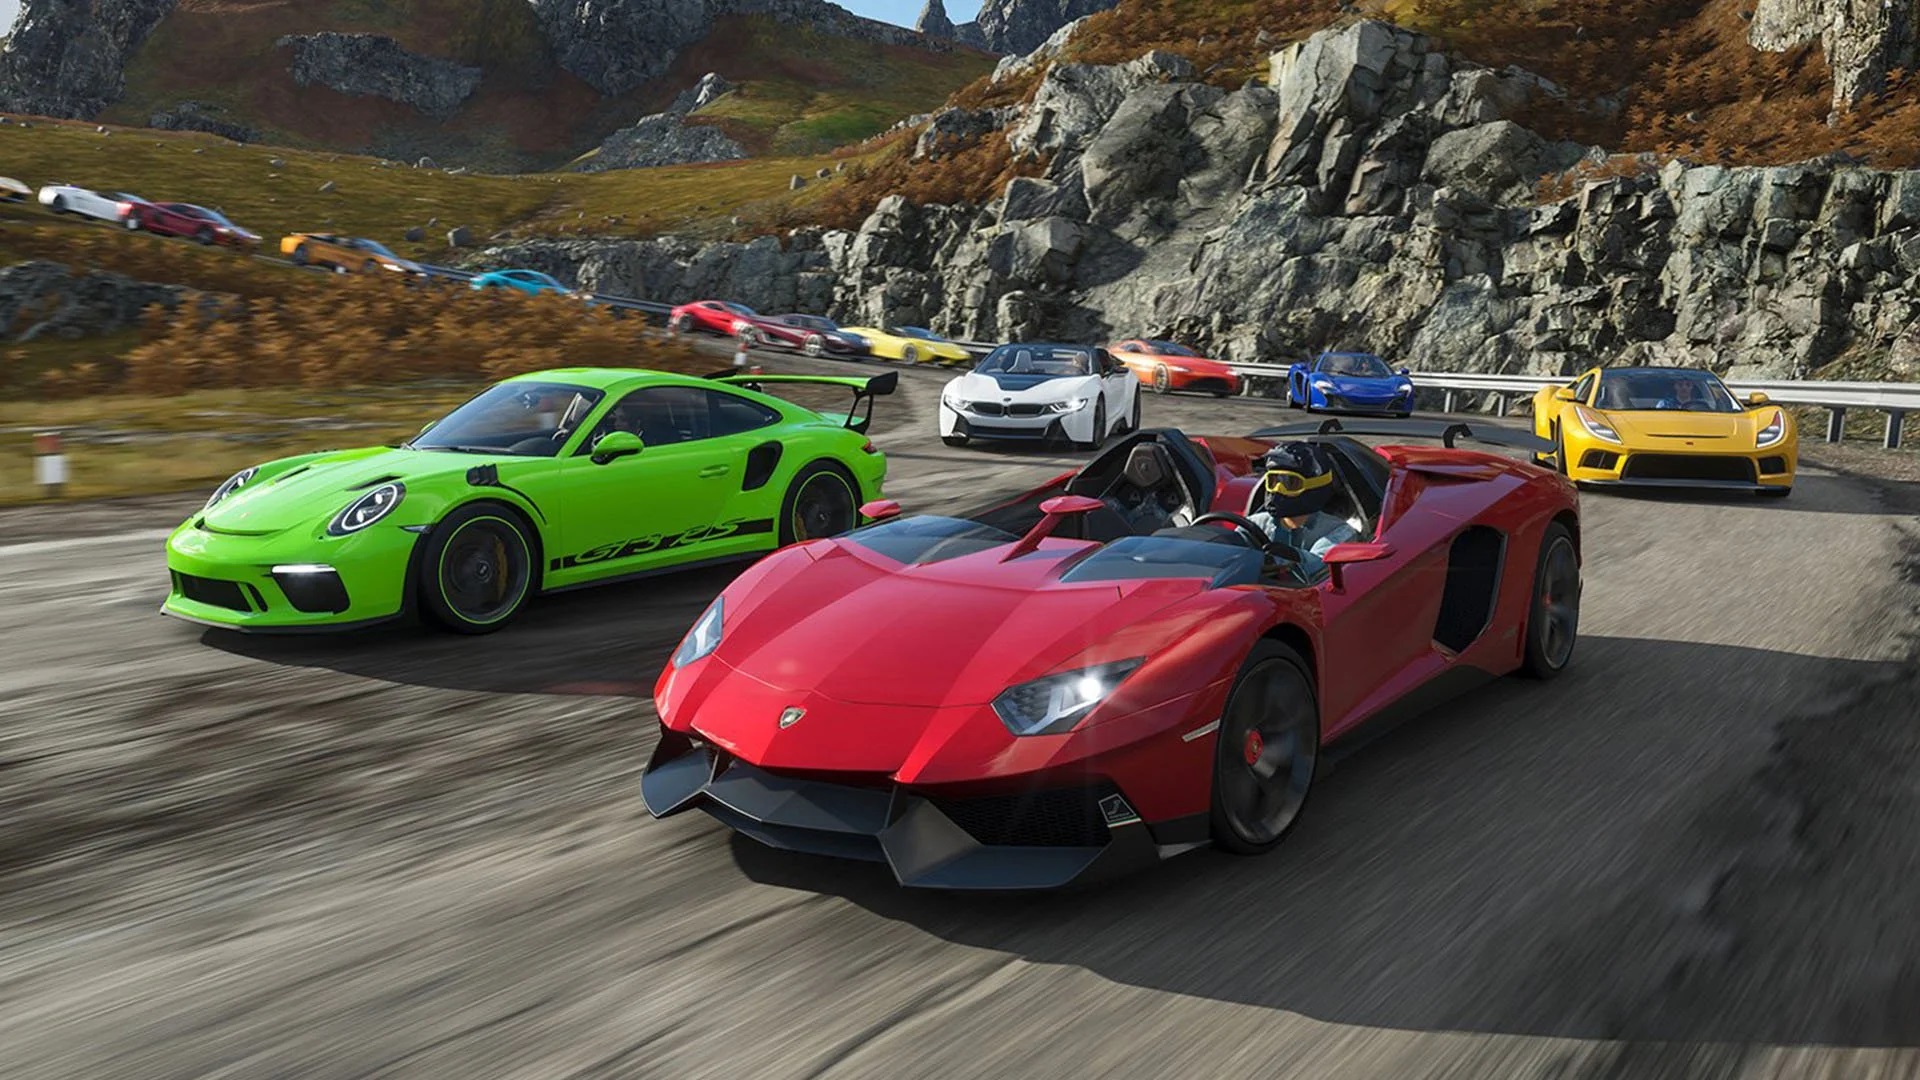 Coches enfrentándose en una de las carreras de Forza Motorsports, el videojuego más inclusivo según el FIVI.